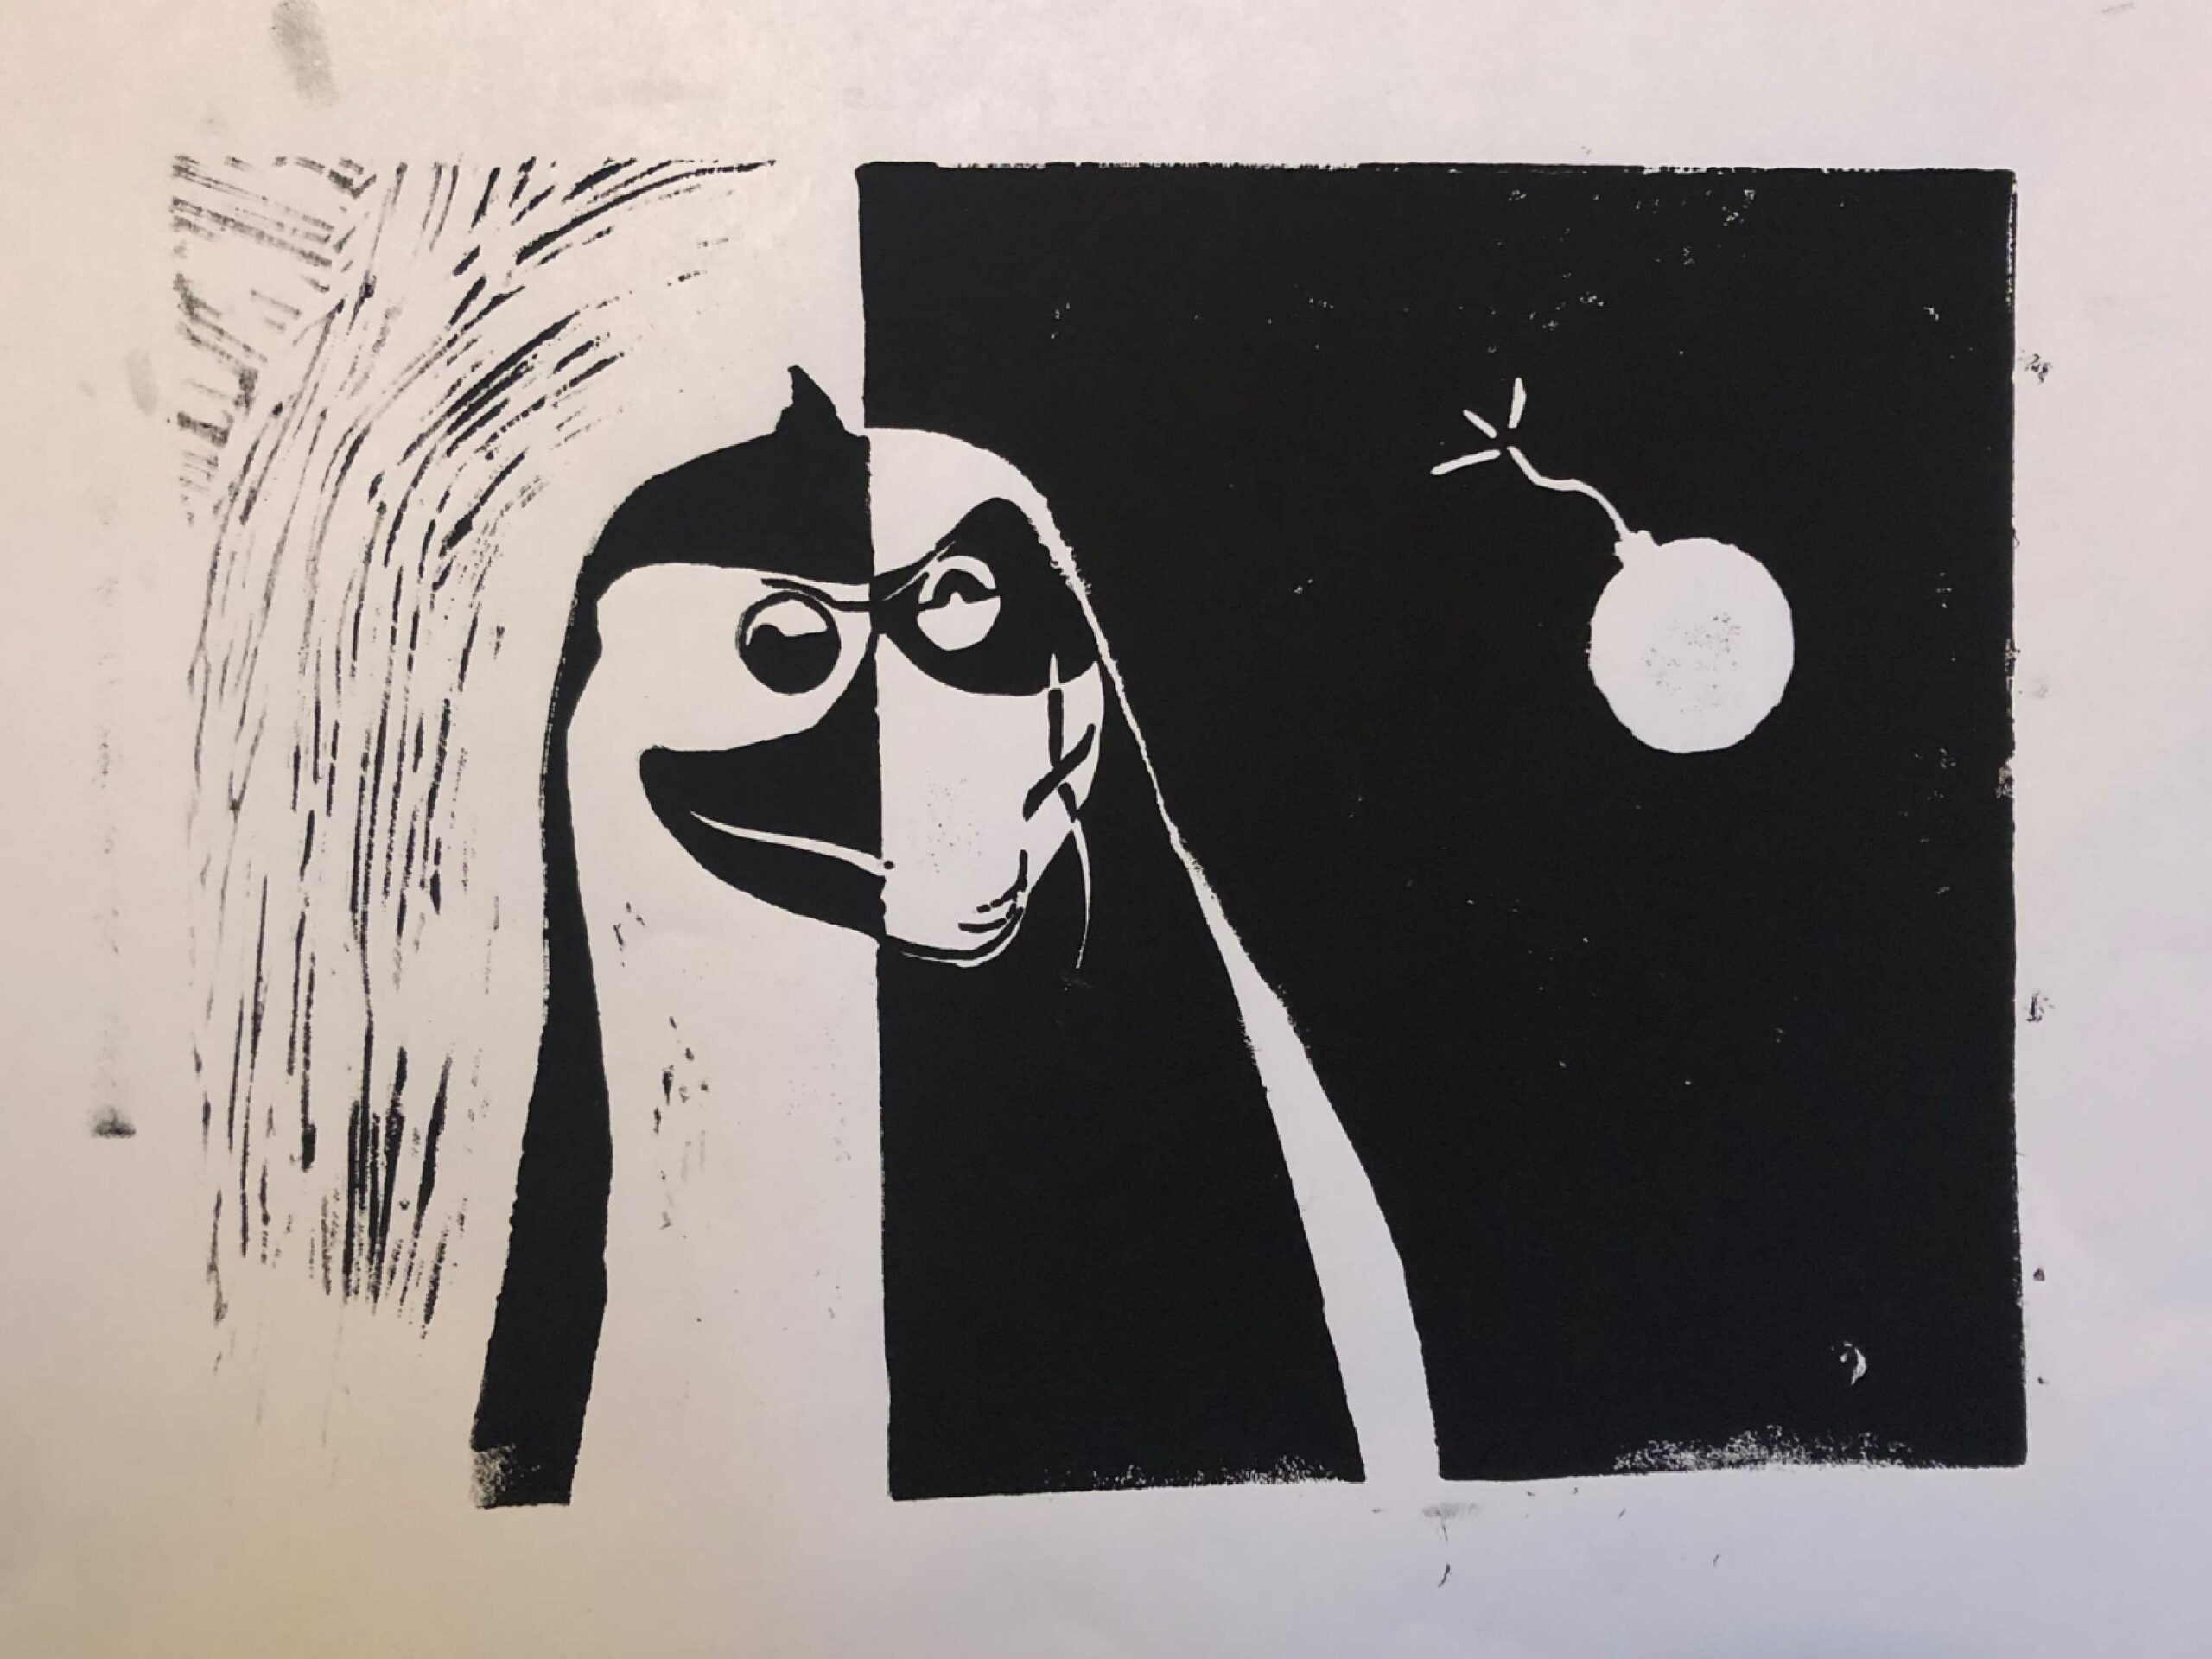 Auf diesem Bild sieht man einen Linolschnitt eines Pinguins.